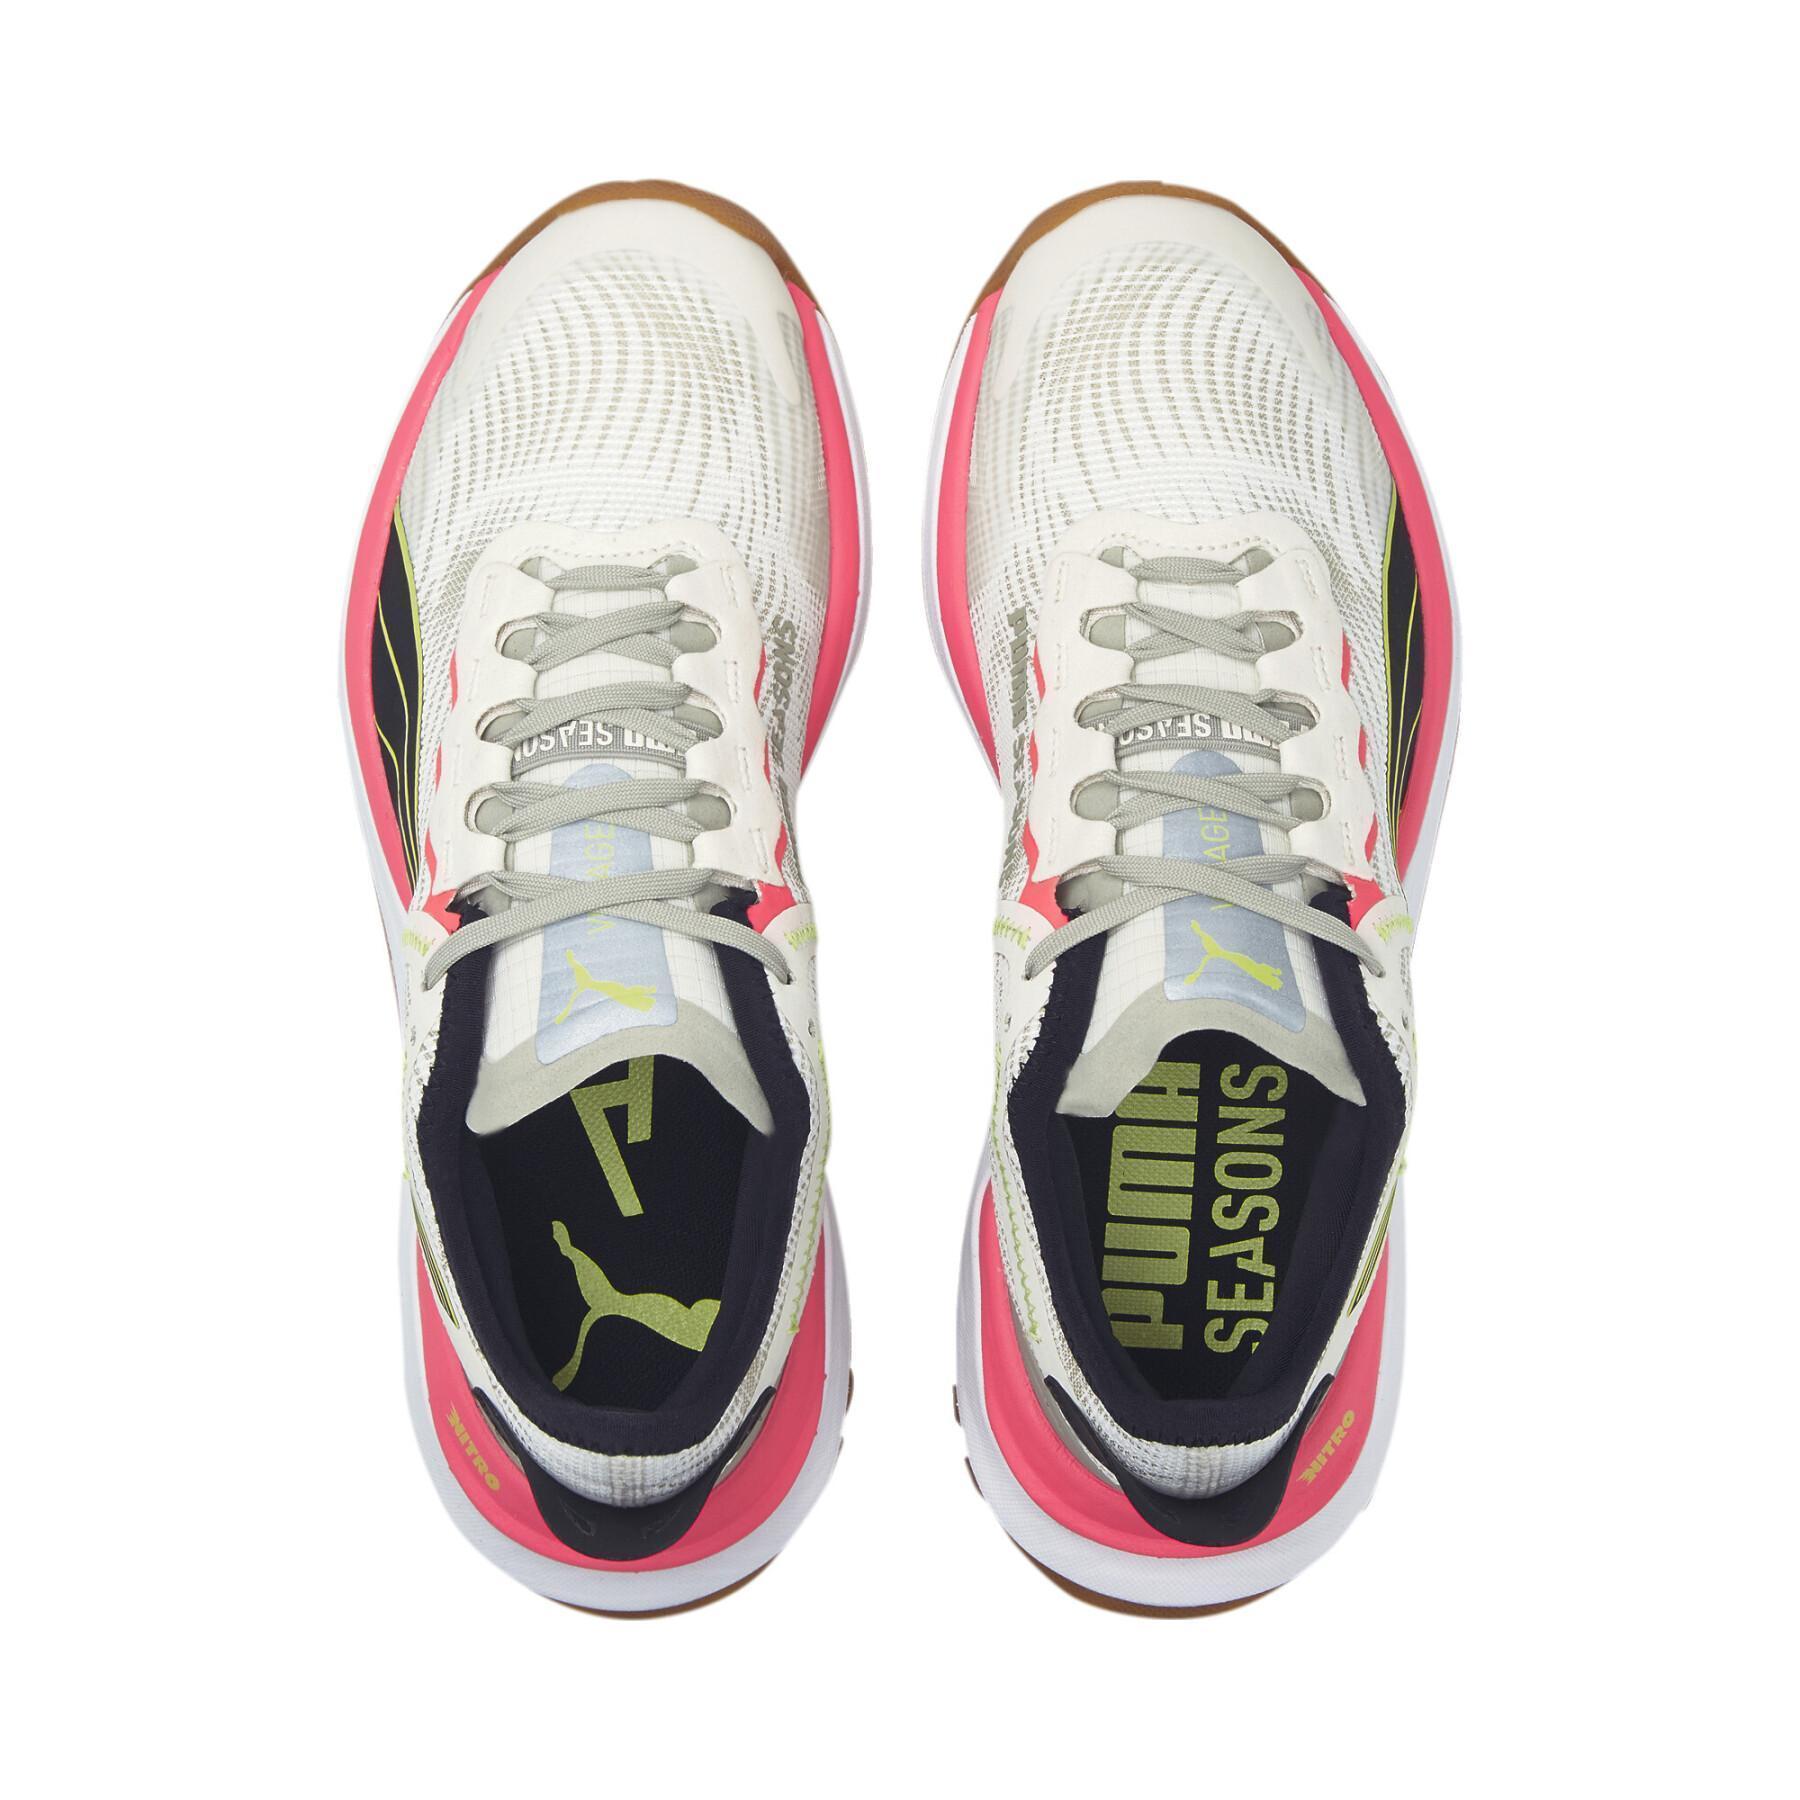 Chaussures de running femme Puma Voyage Nitro 2